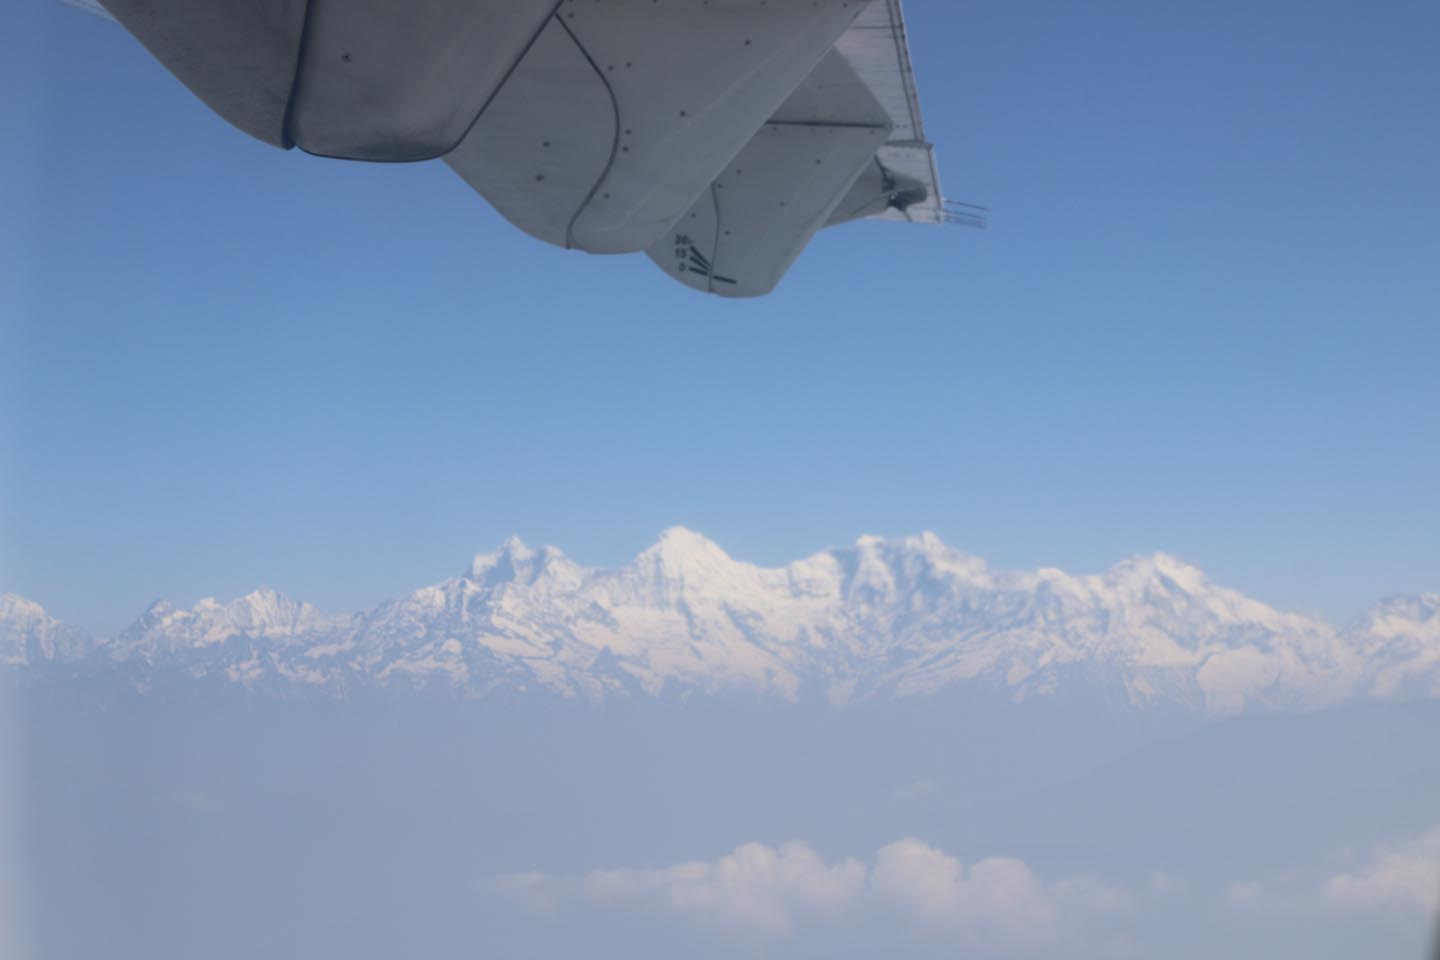 Every flight is a mountain flight in Nepal.